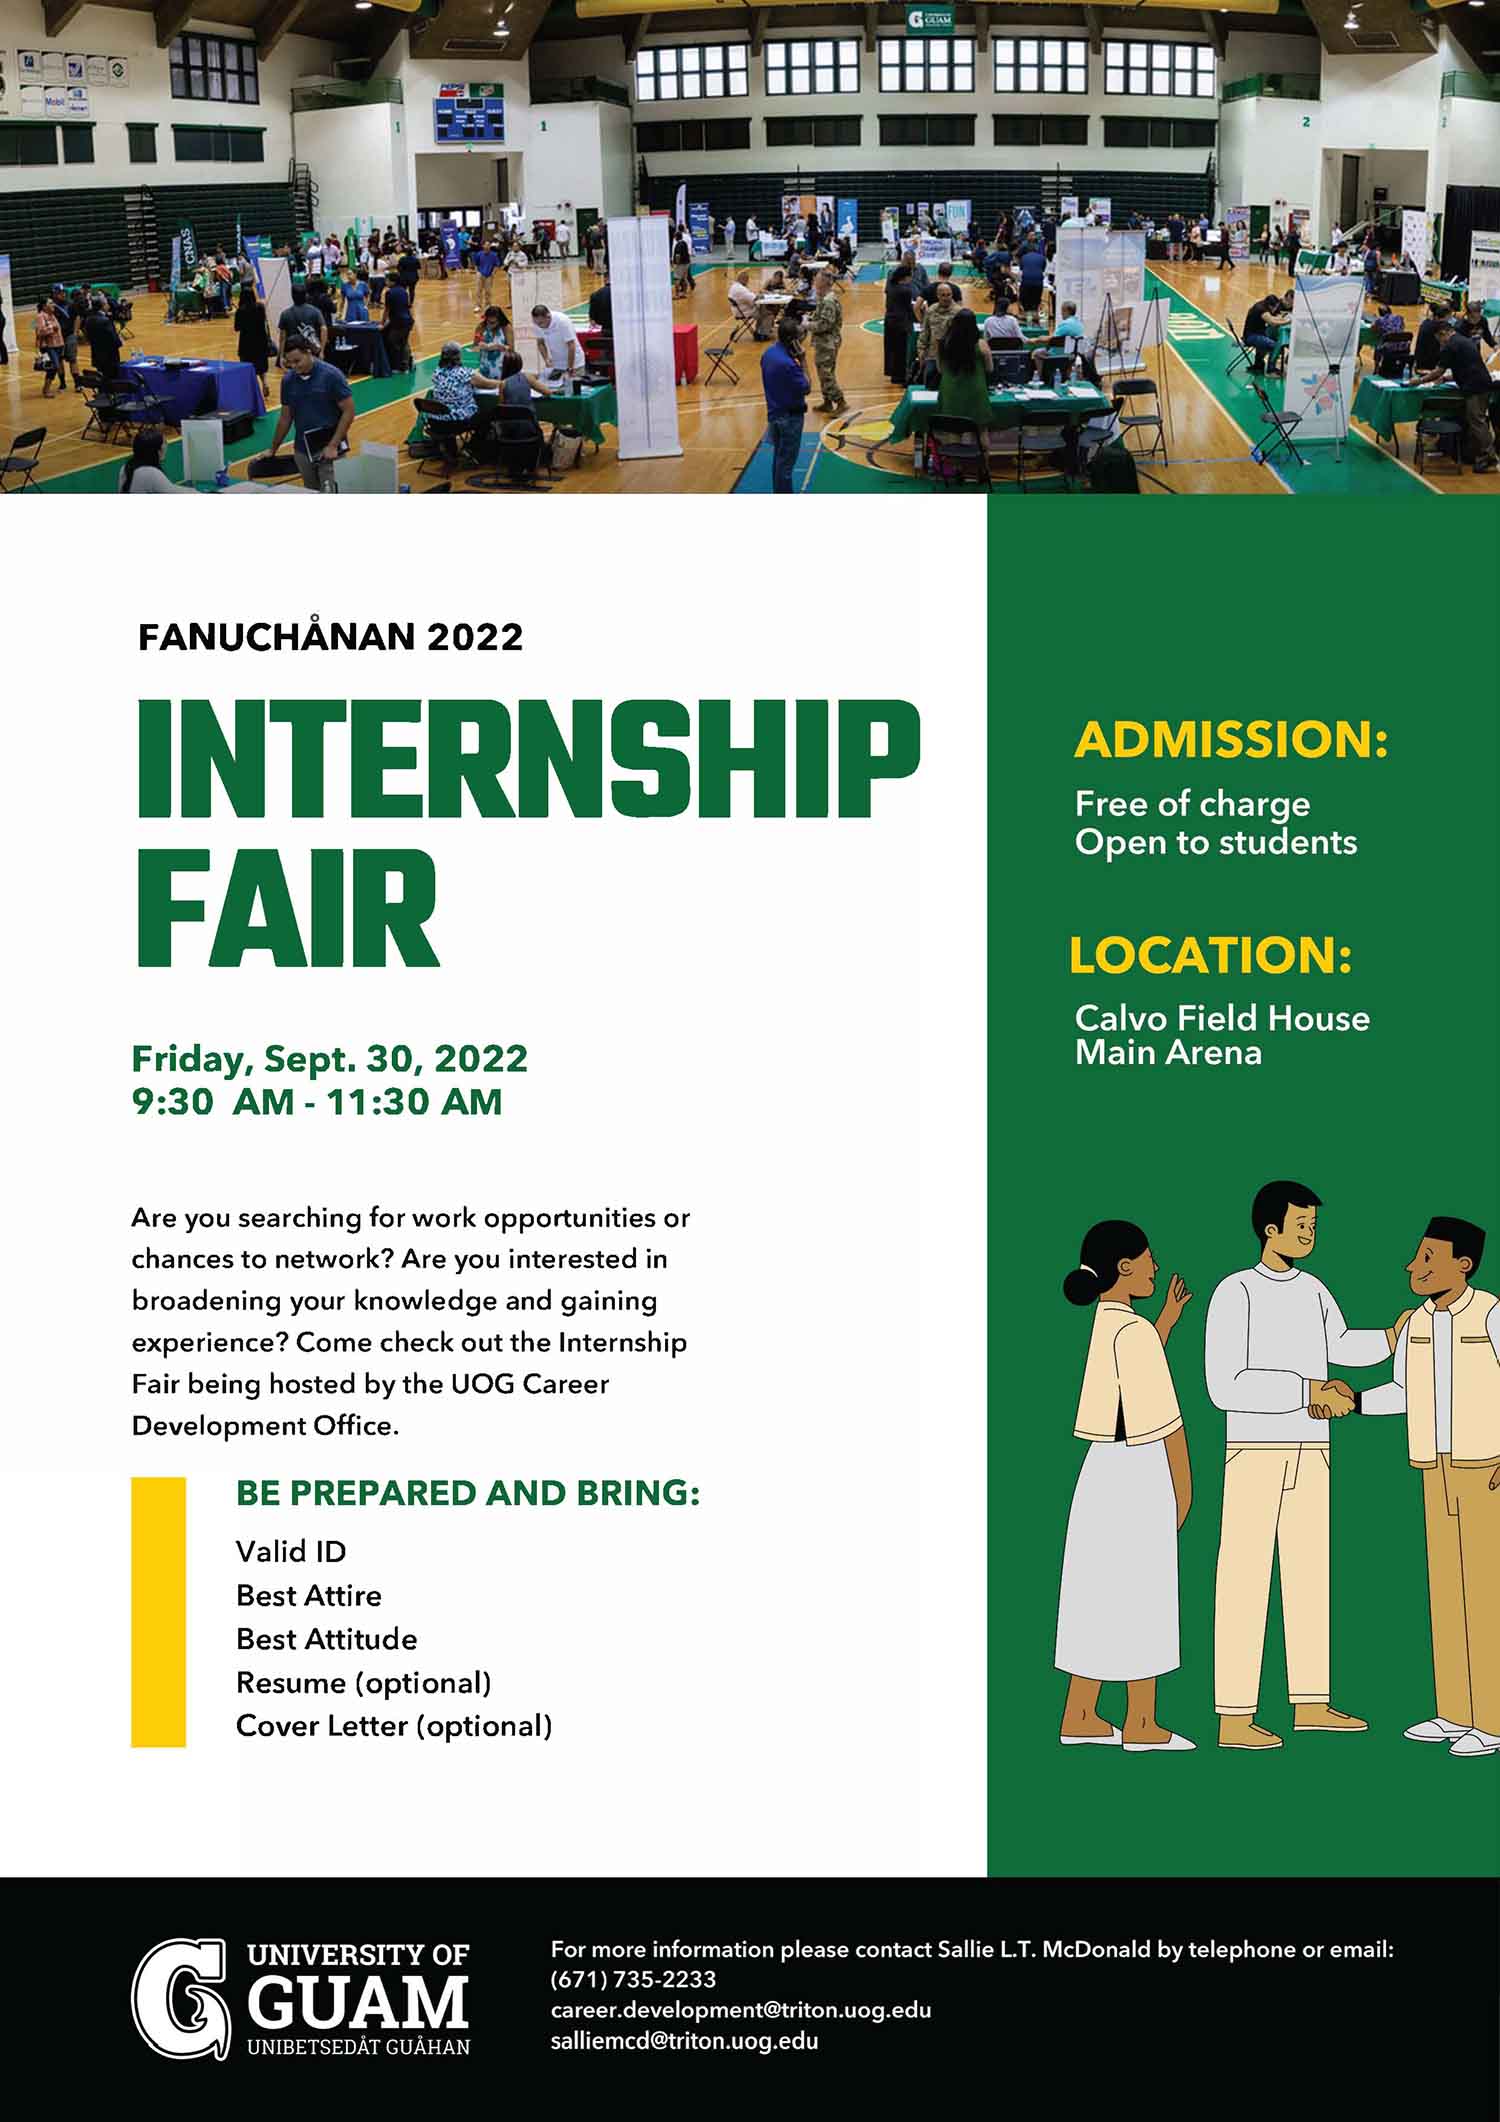 Fanuchanan 2022 Internship Fair